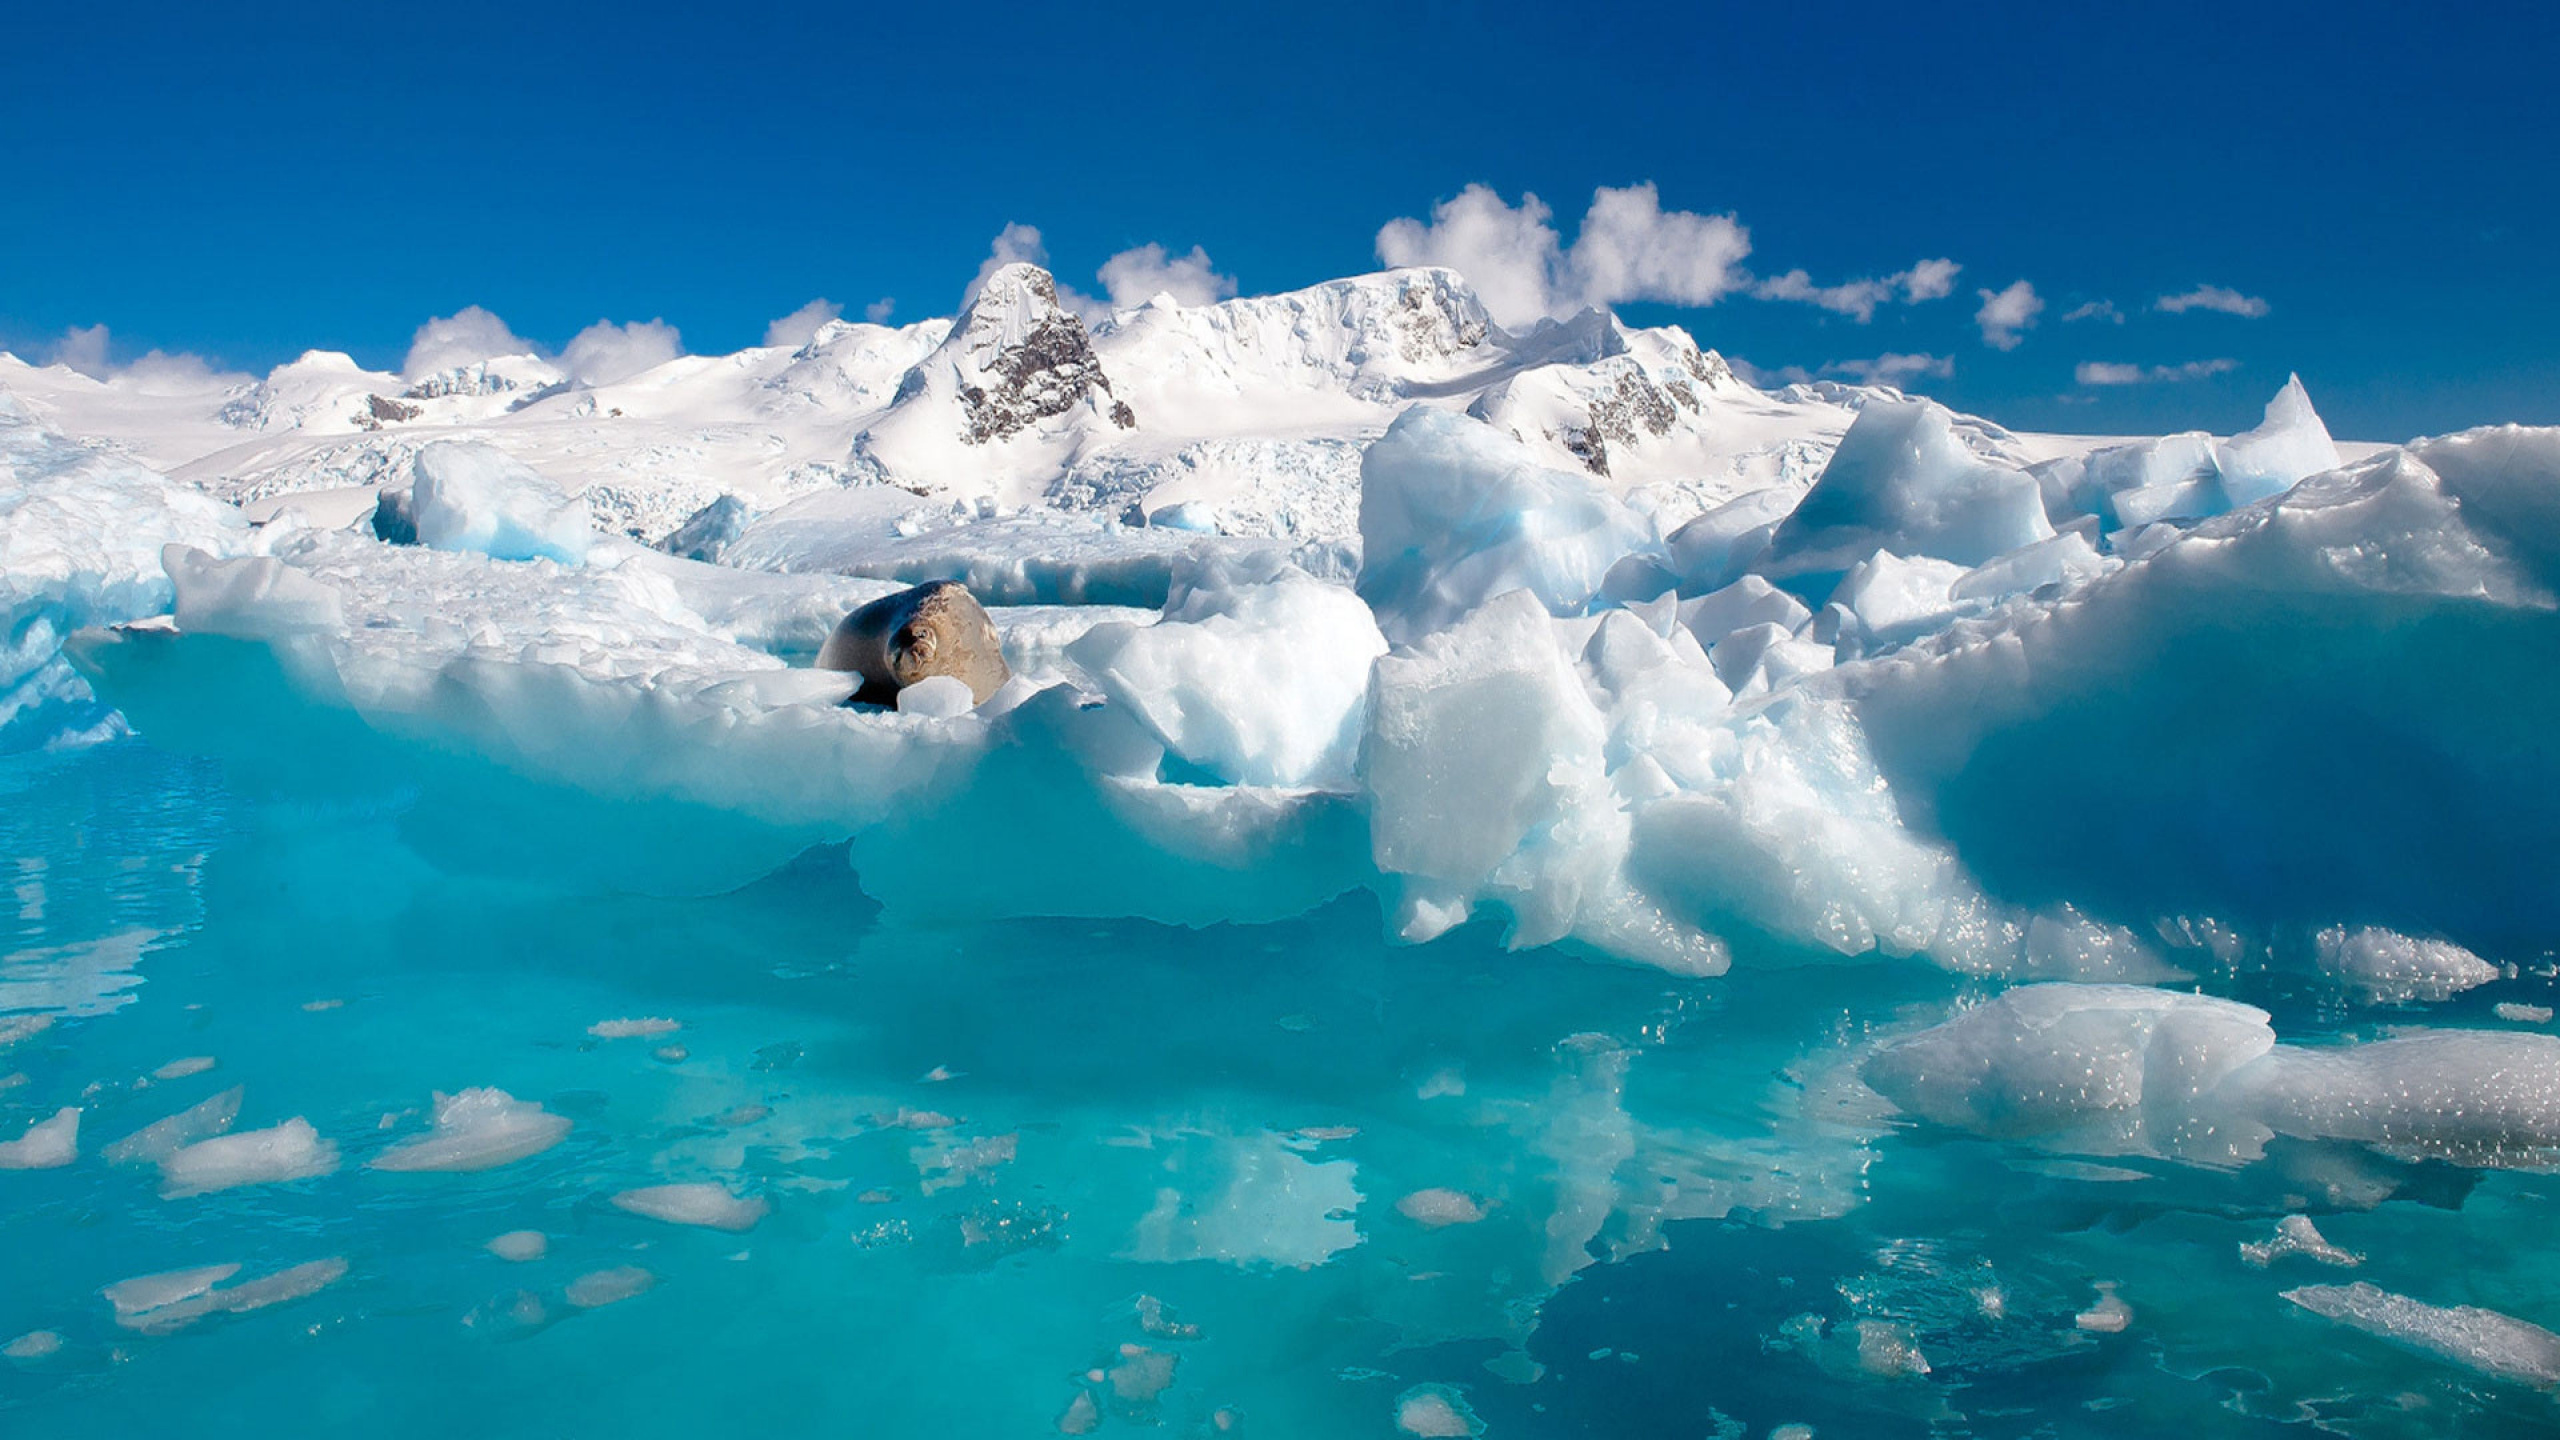 极地冰盖, 冰山, 冰川湖, 北冰洋, 冰帽 壁纸 2560x1440 允许